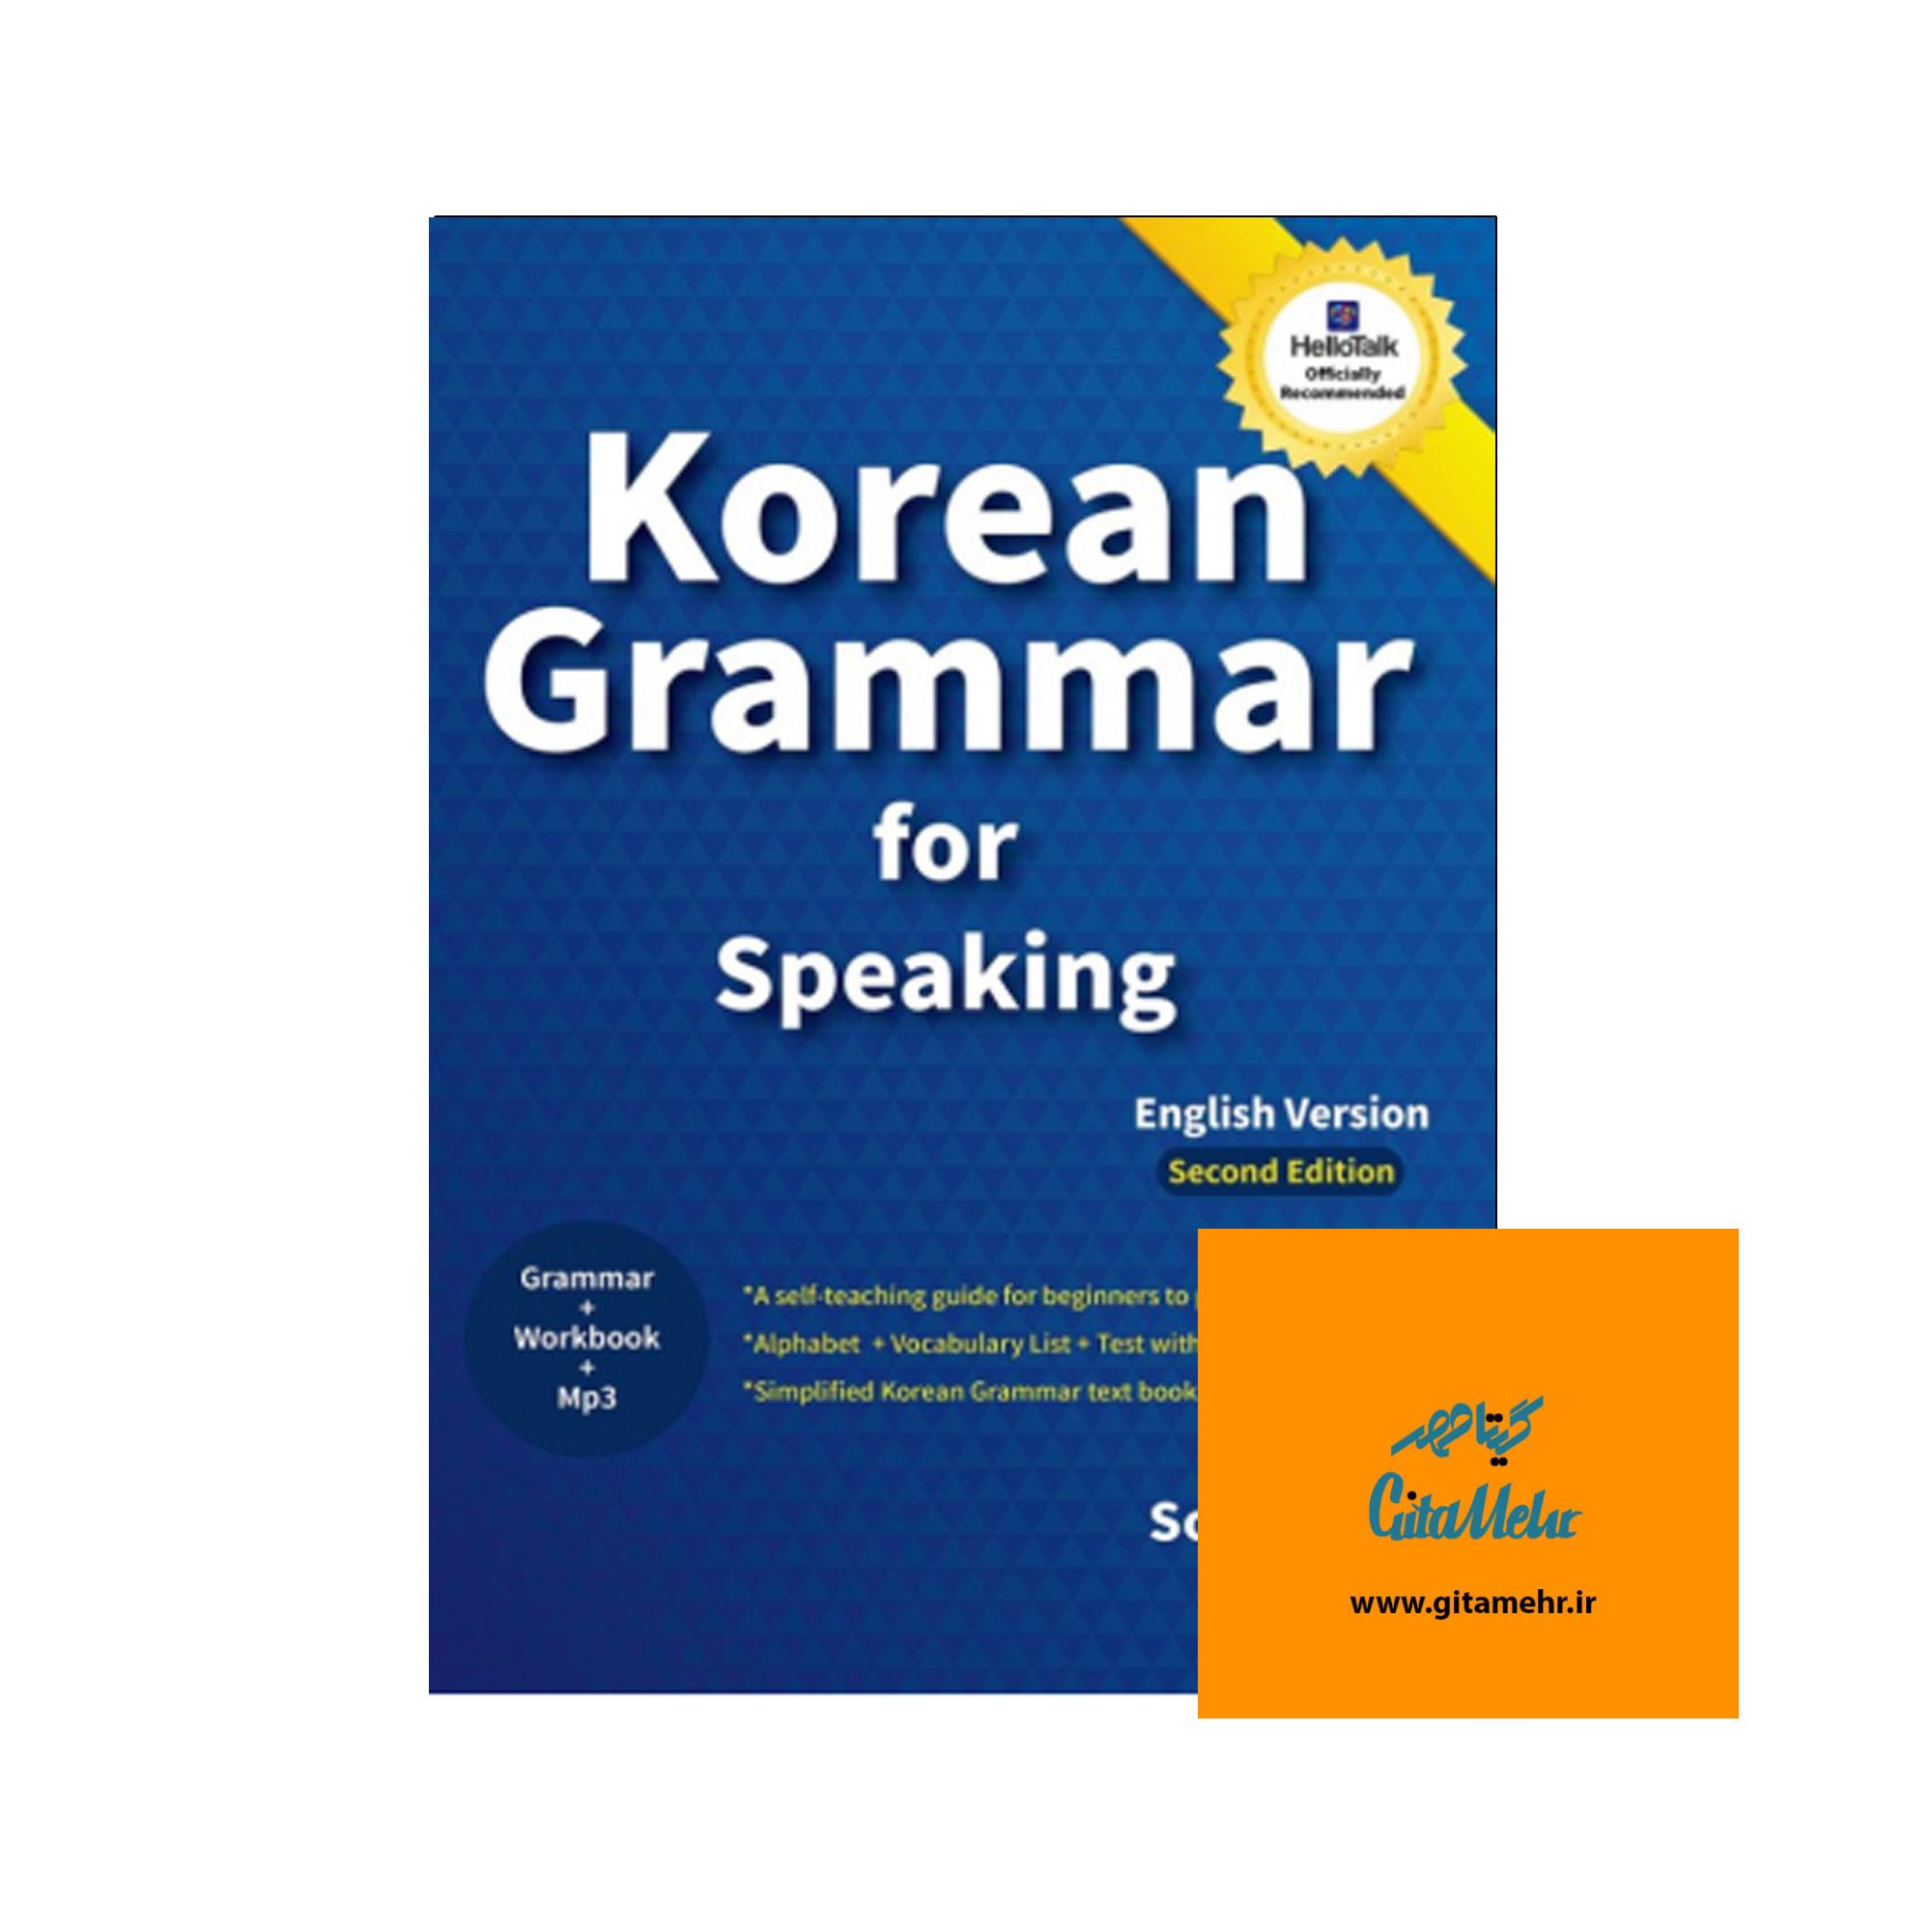 korean grammar for speaking daa9d8aad8a7d8a8 65f0860622eb5